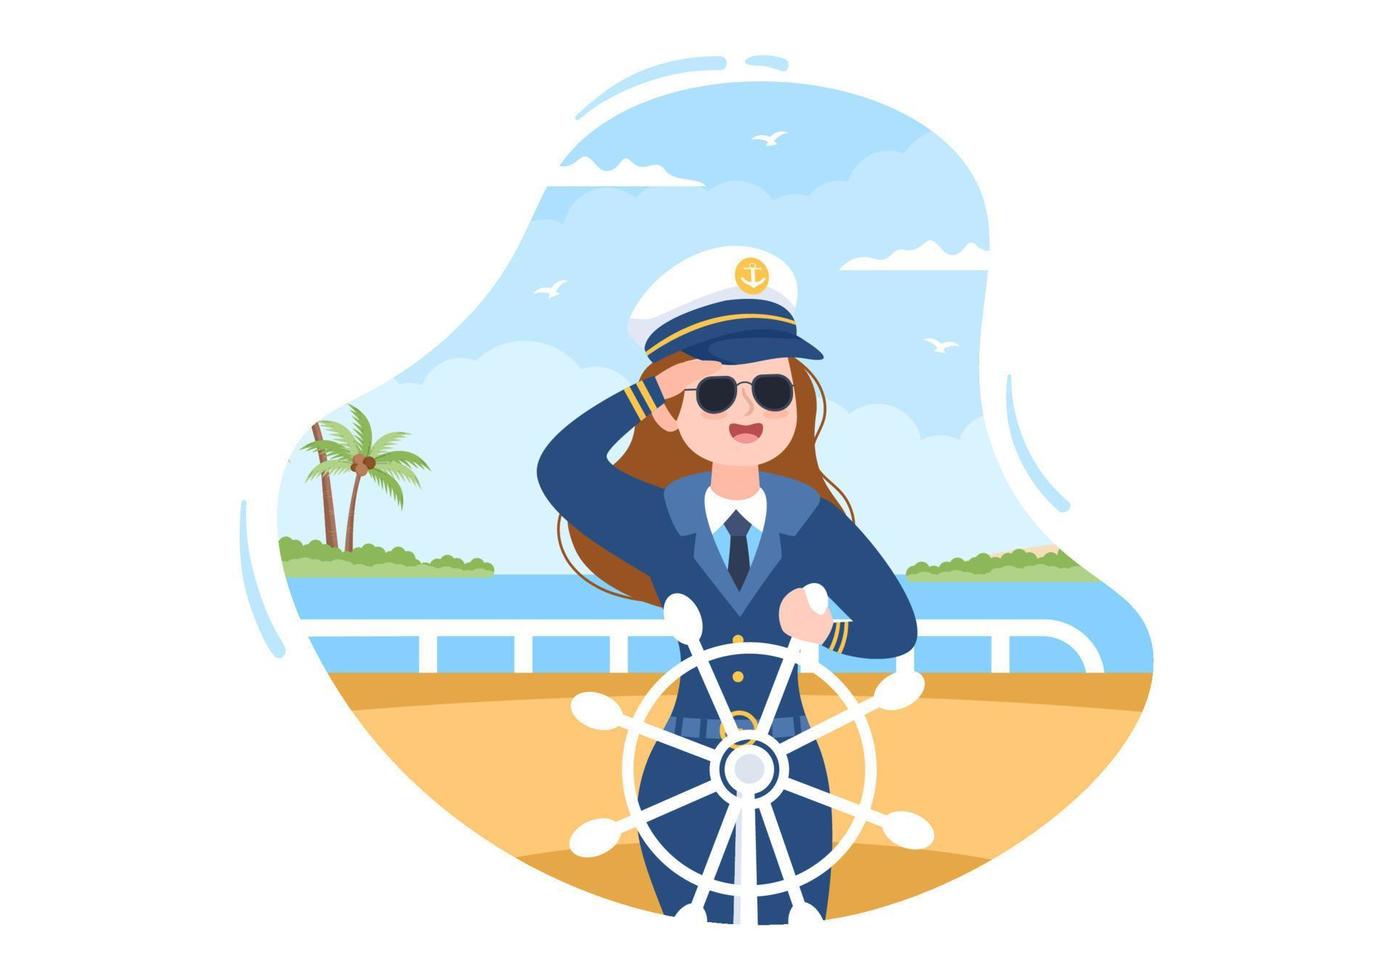 kvinna kryssningsfartyg kapten tecknad illustration i sjöman uniform rider ett fartyg, tittar med kikare eller står på hamnen i platt design vektor